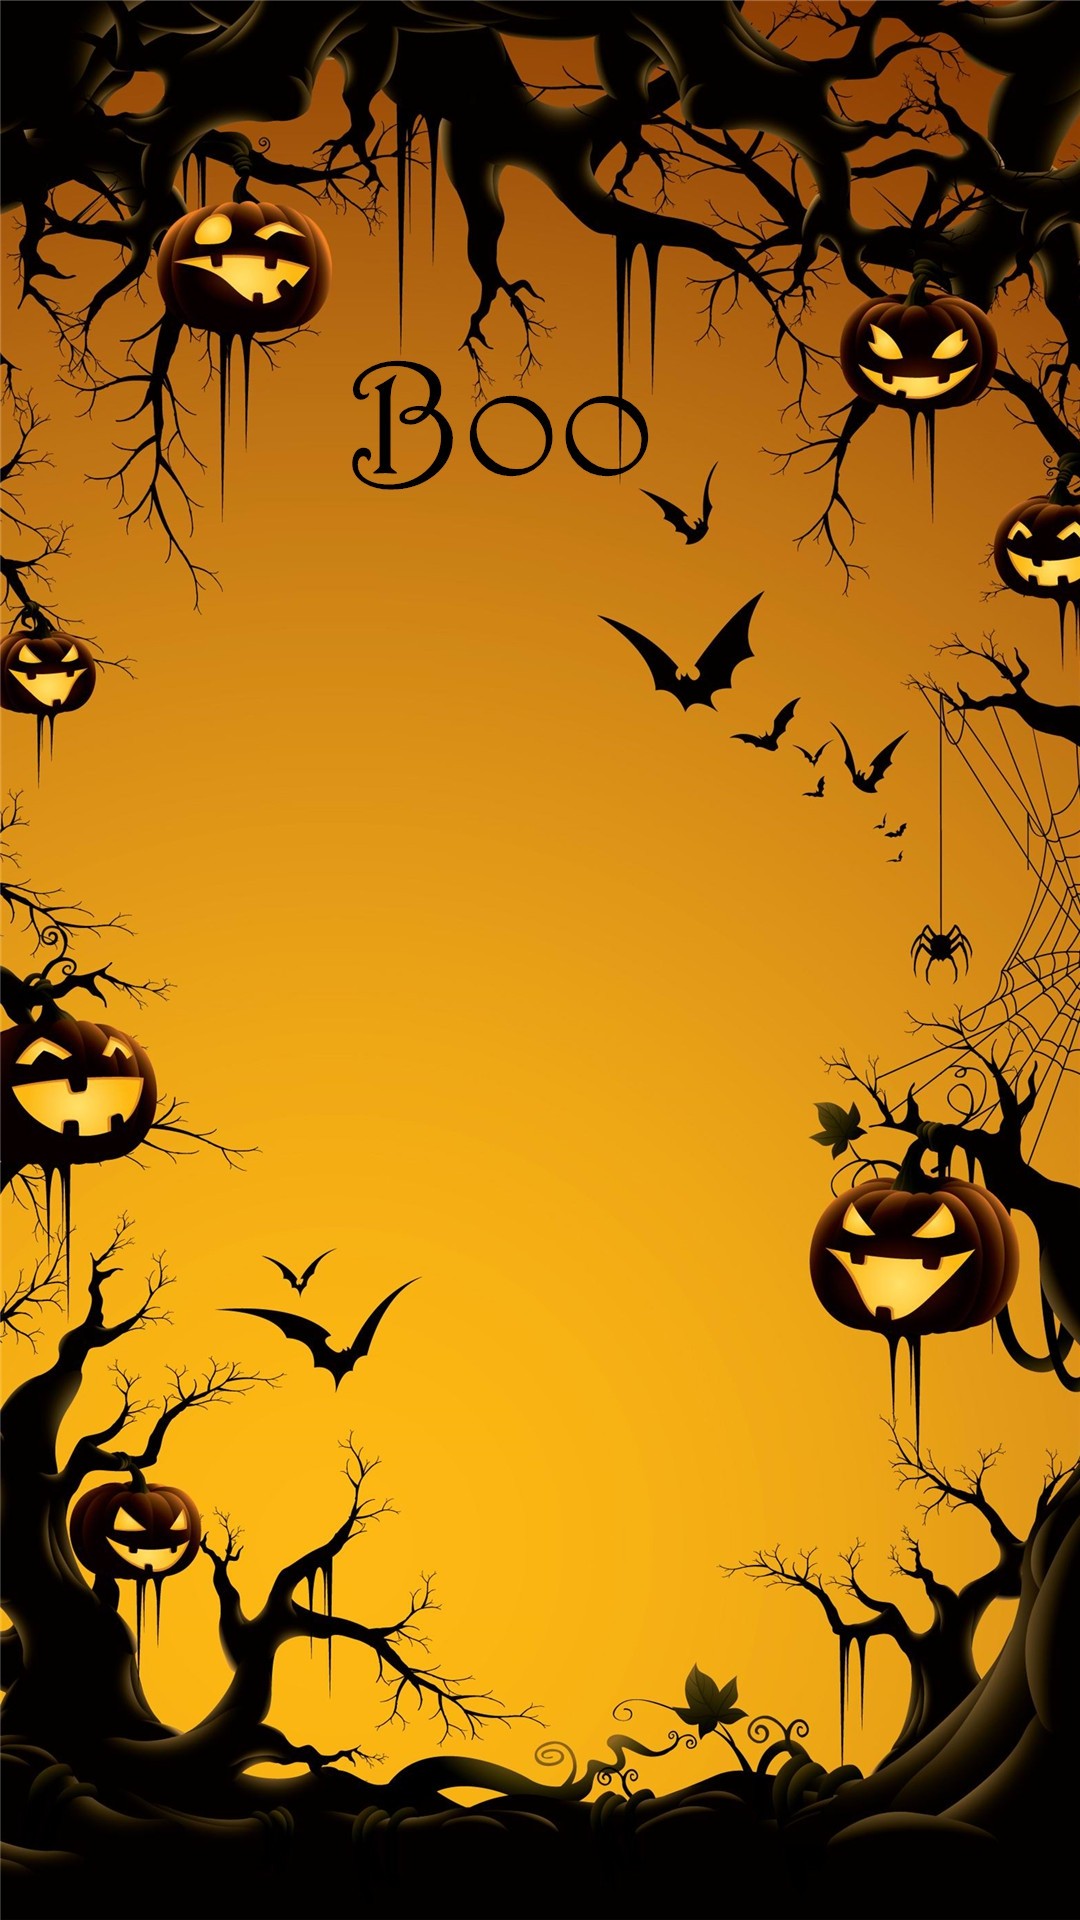 Cool Halloween iPhone wallpaper